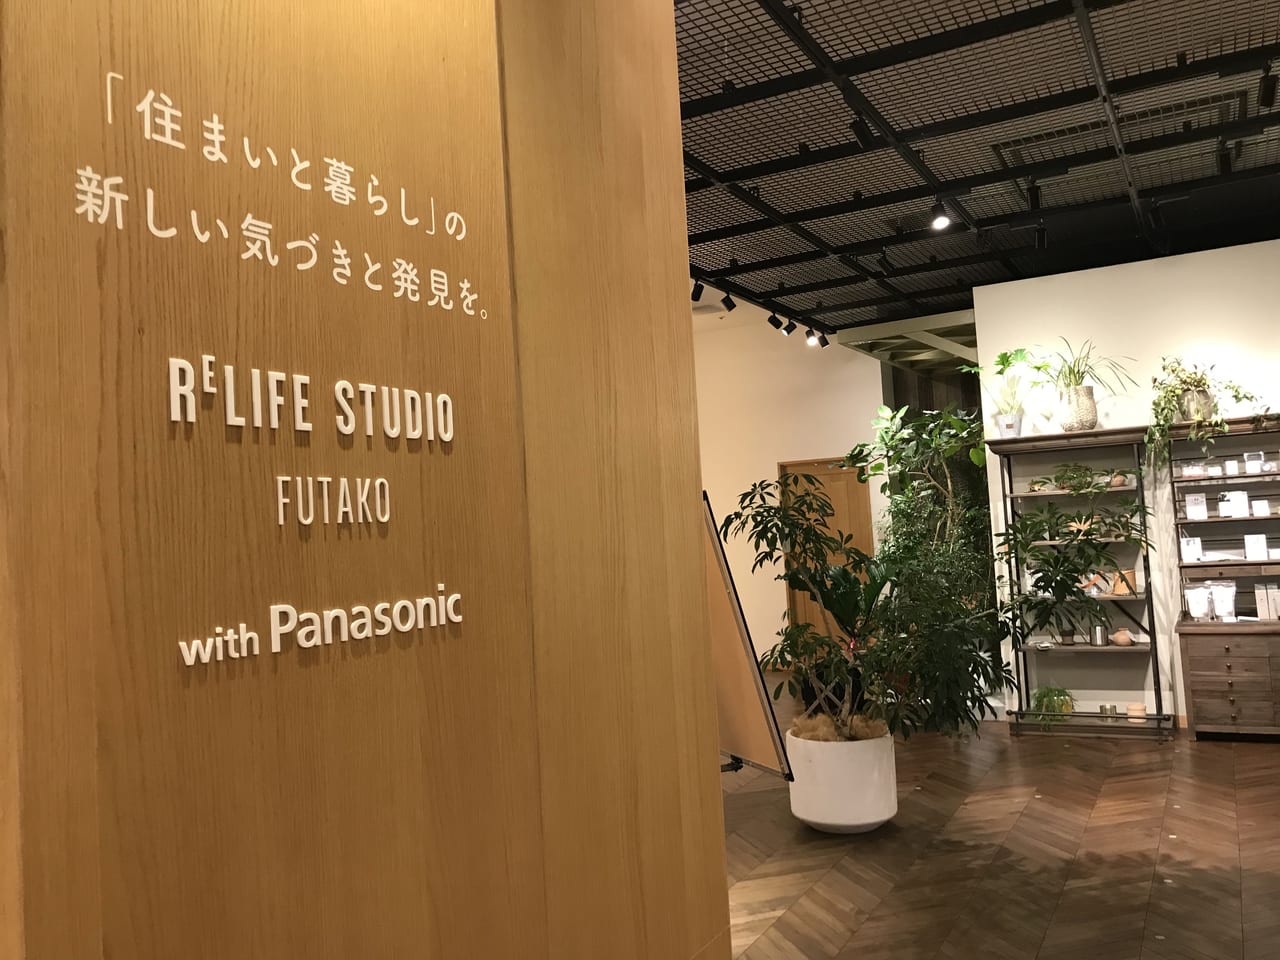 世田谷区二子玉川ライズ蔦屋家電RELIFE STUDIO FUTAKOは2021年12月26日閉店します。